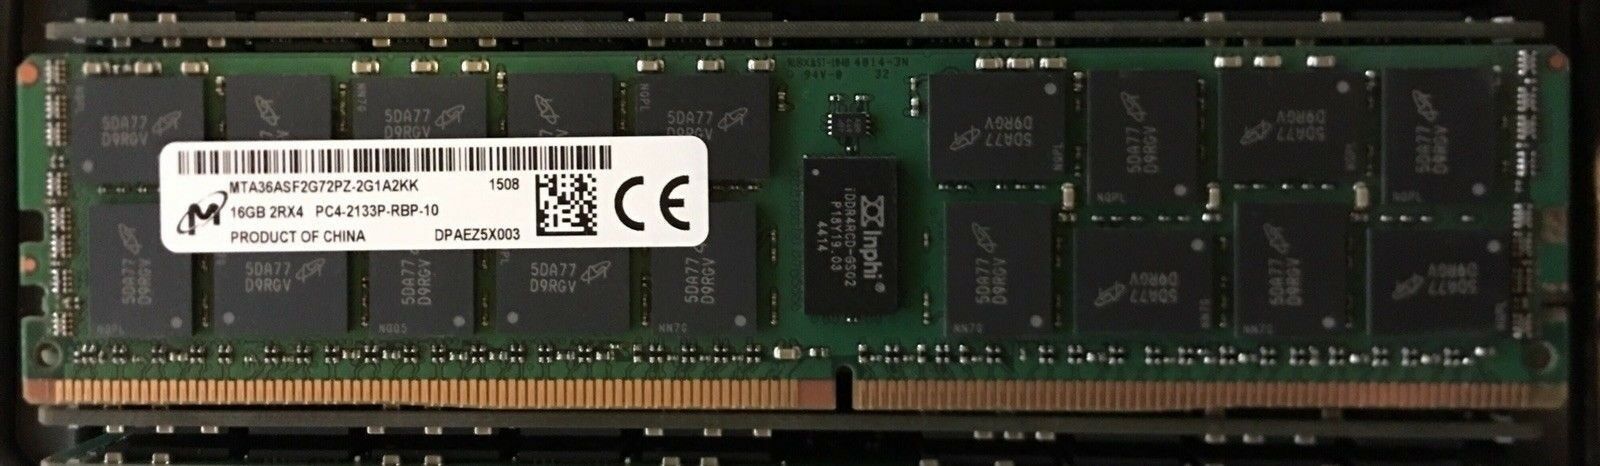 Micron 16GB 2RX4 PC4-17000 DDR4-2133P-R MTA36ASF2G72PZ-2G1A